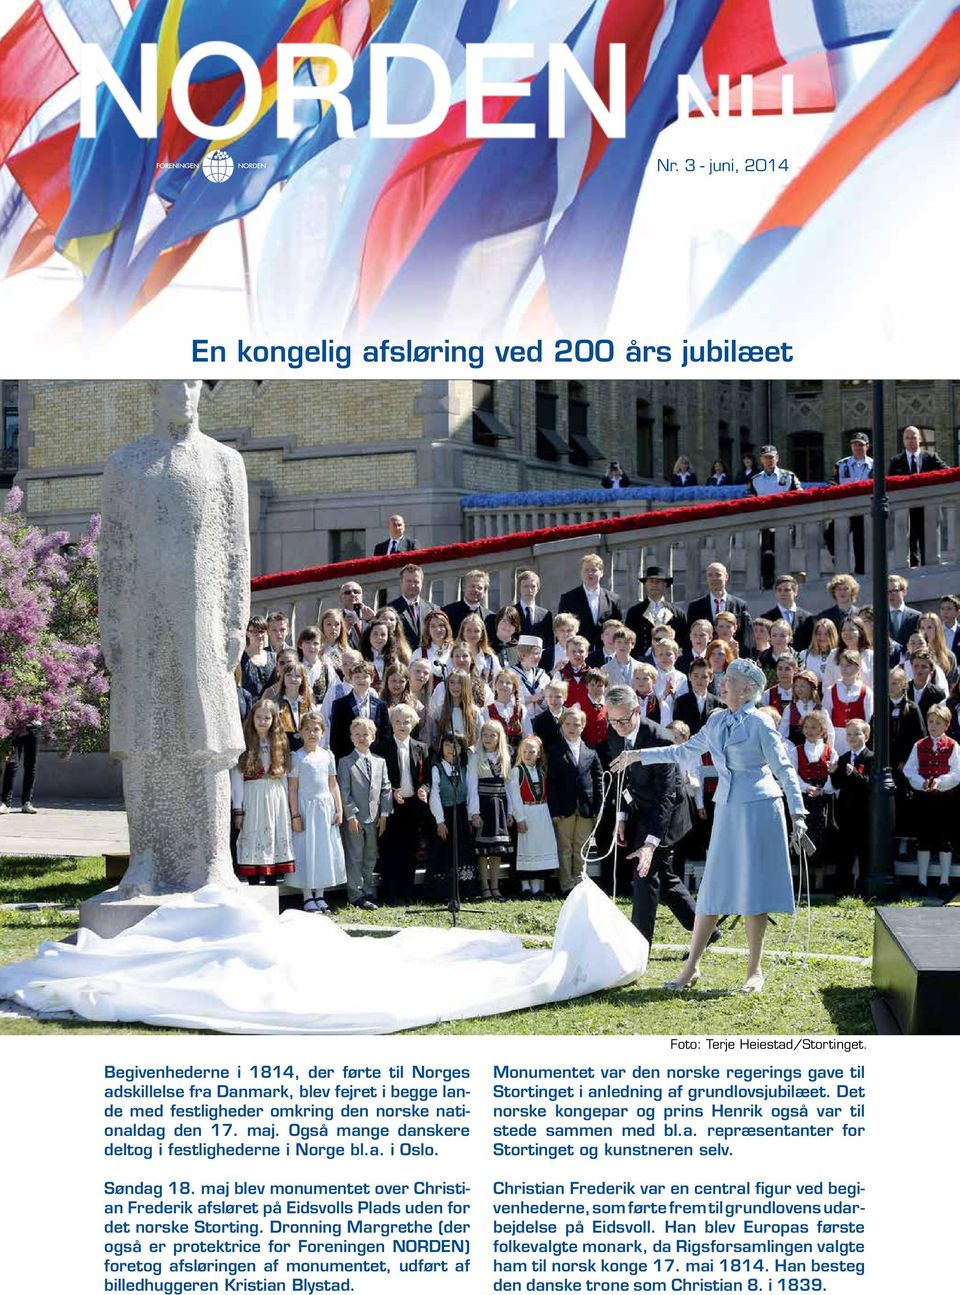 Også mange danskere deltog i festlighederne i Norge bl.a. i Oslo. Søndag 18. maj blev monumentet over Christian Frederik afsløret på Eidsvolls Plads uden for det norske Storting.